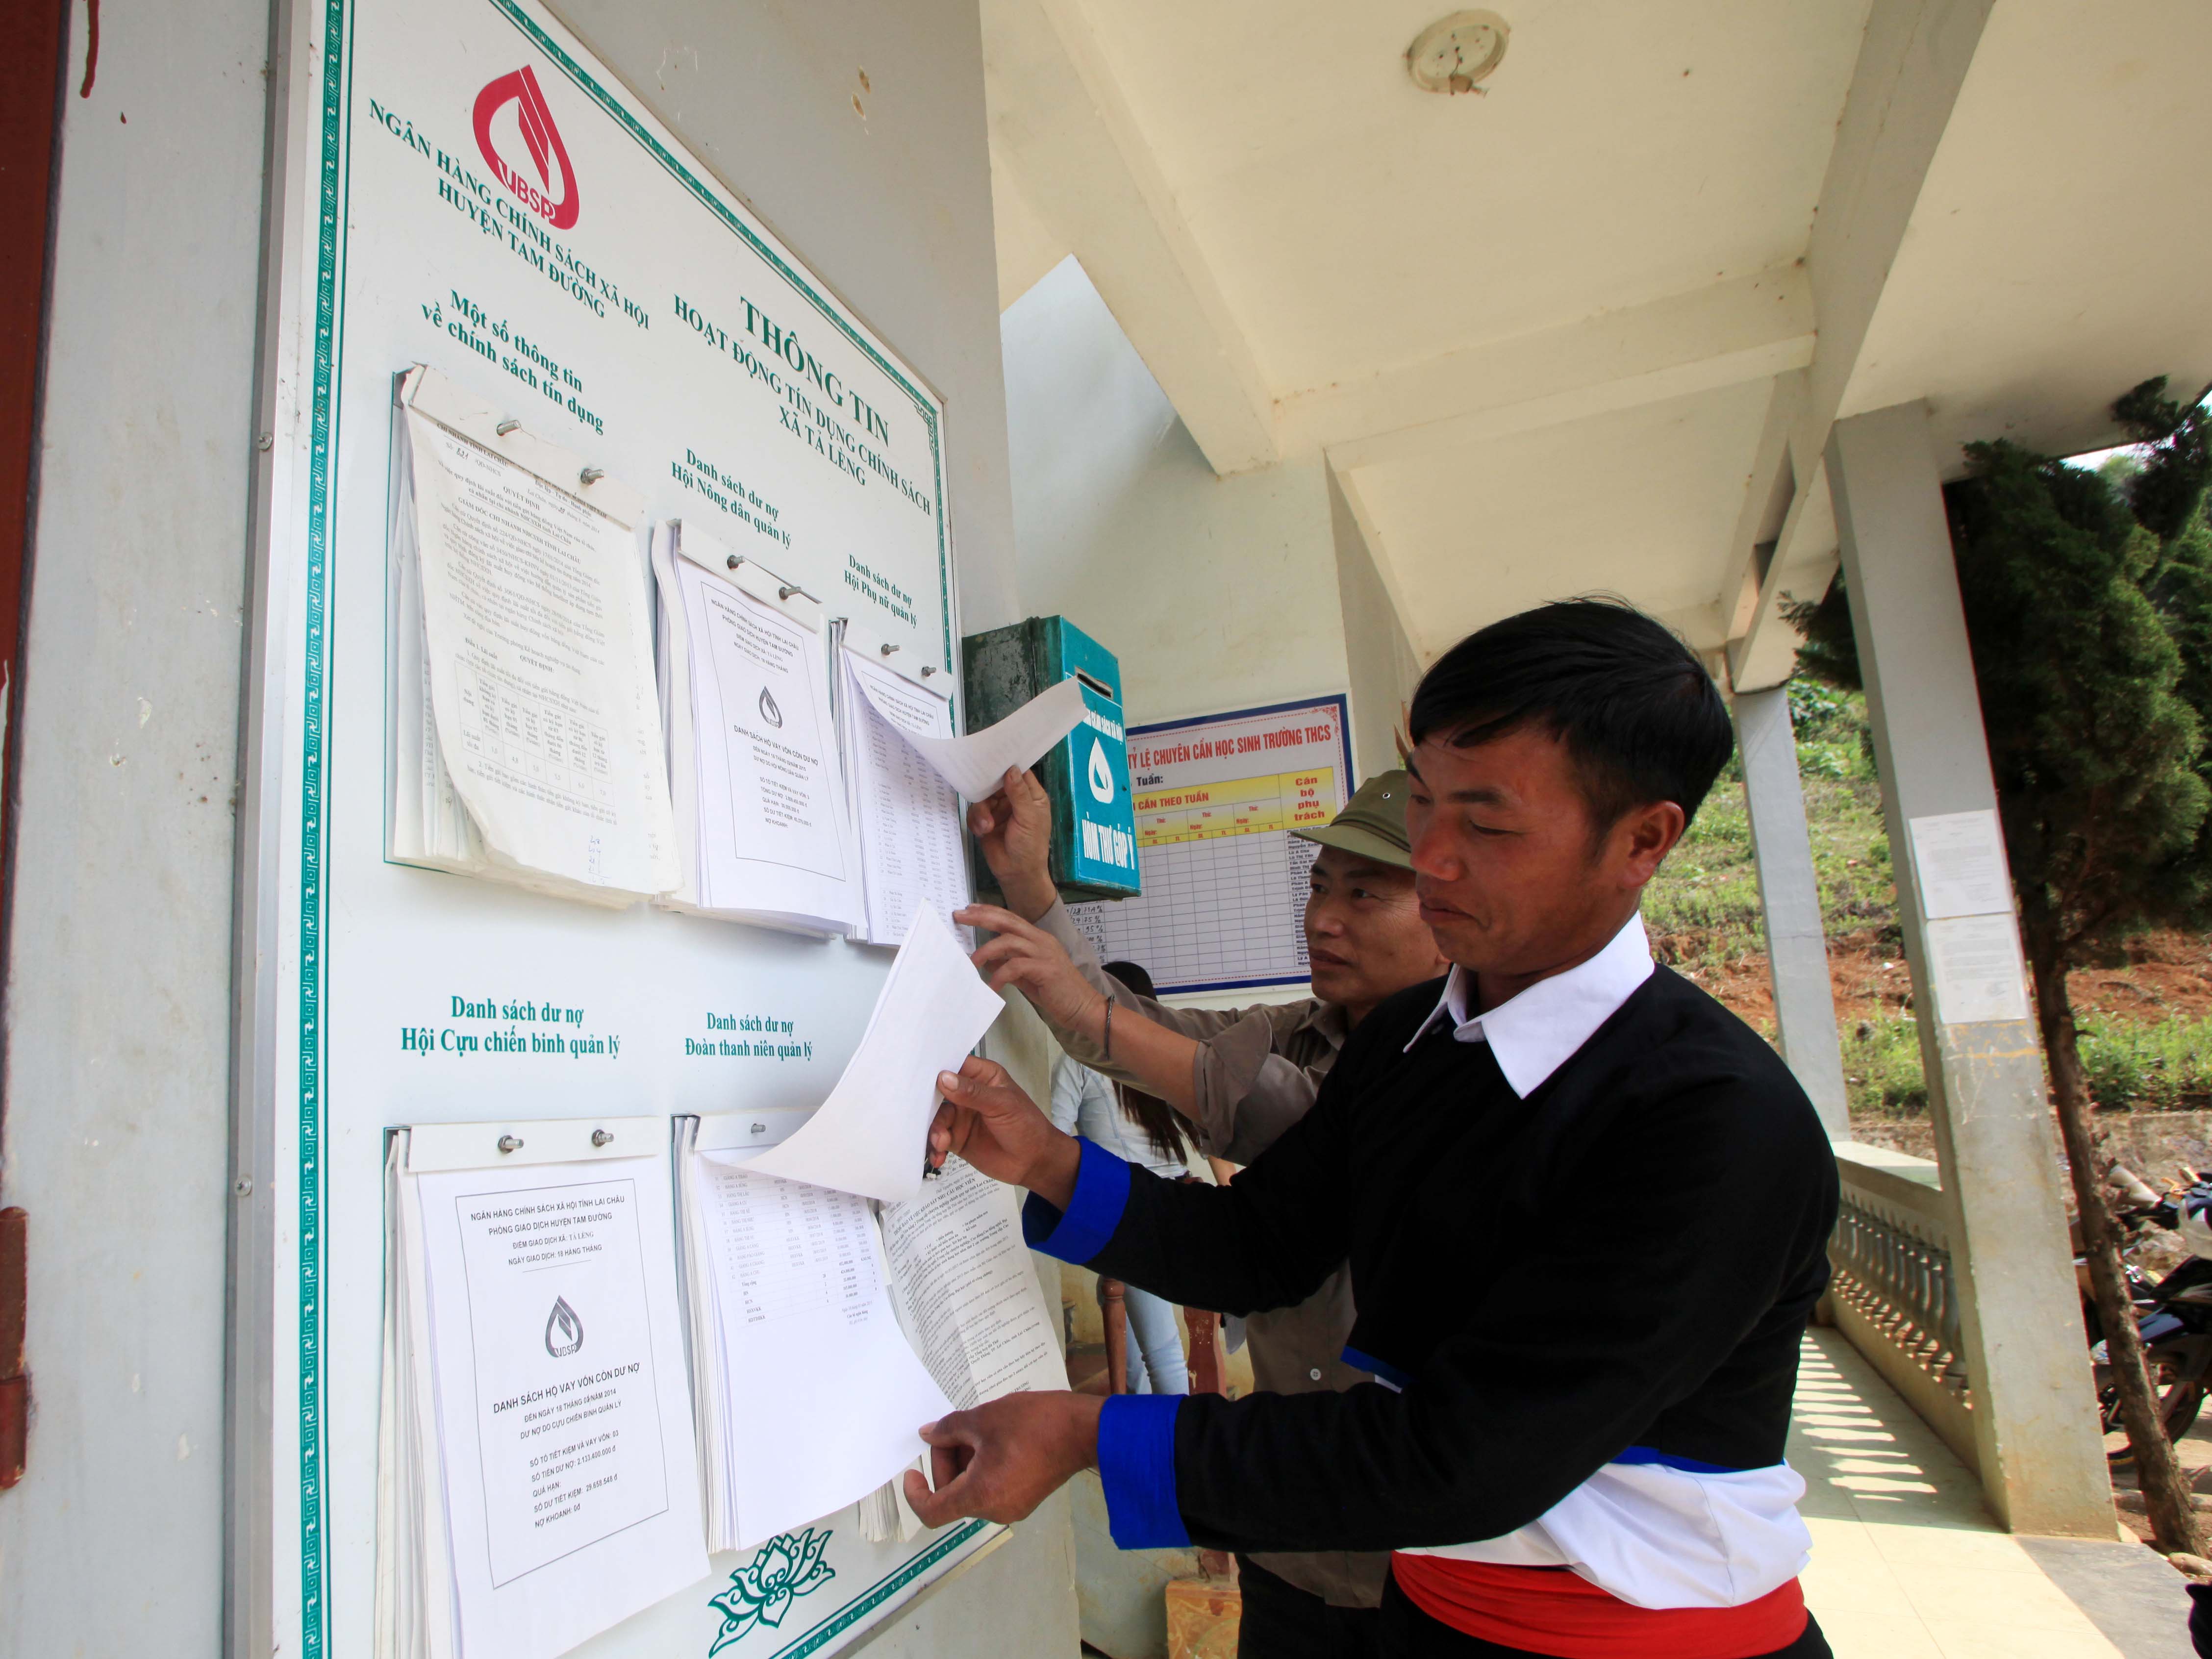 Effectiveness of VBSP's loans in Dak Lak province